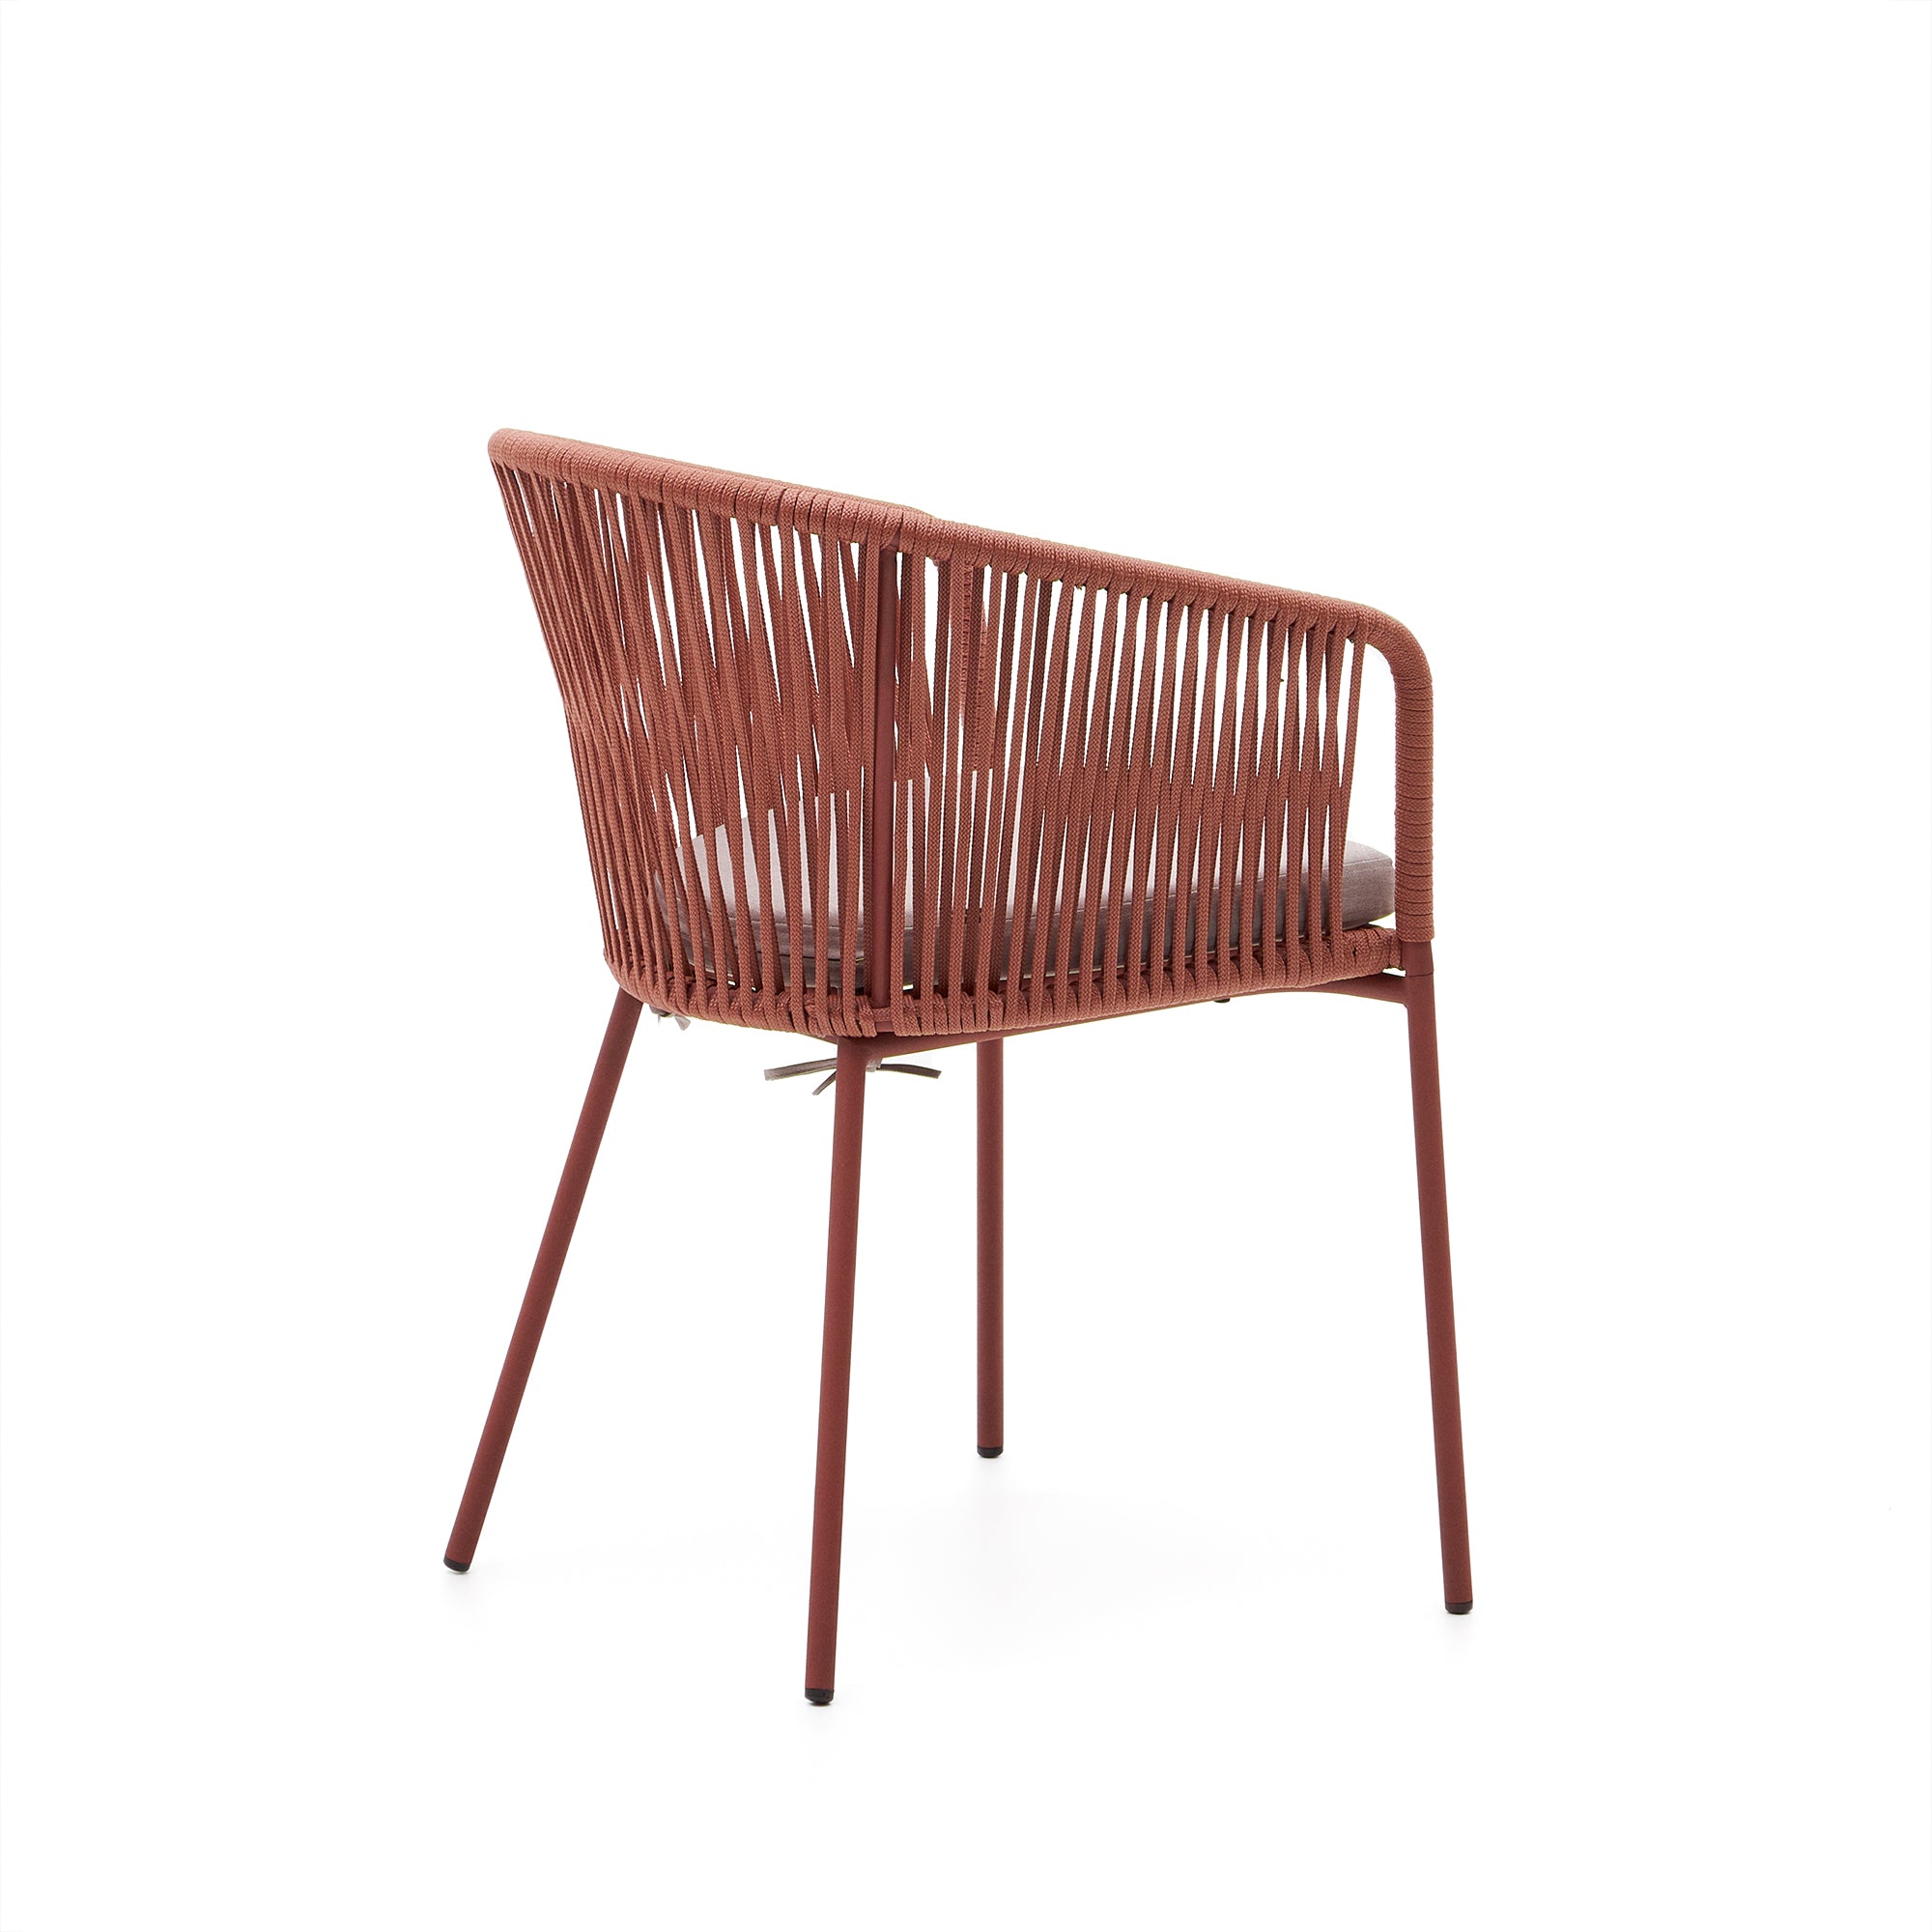 Yanet terracotta rope chair with galvanised steel legs